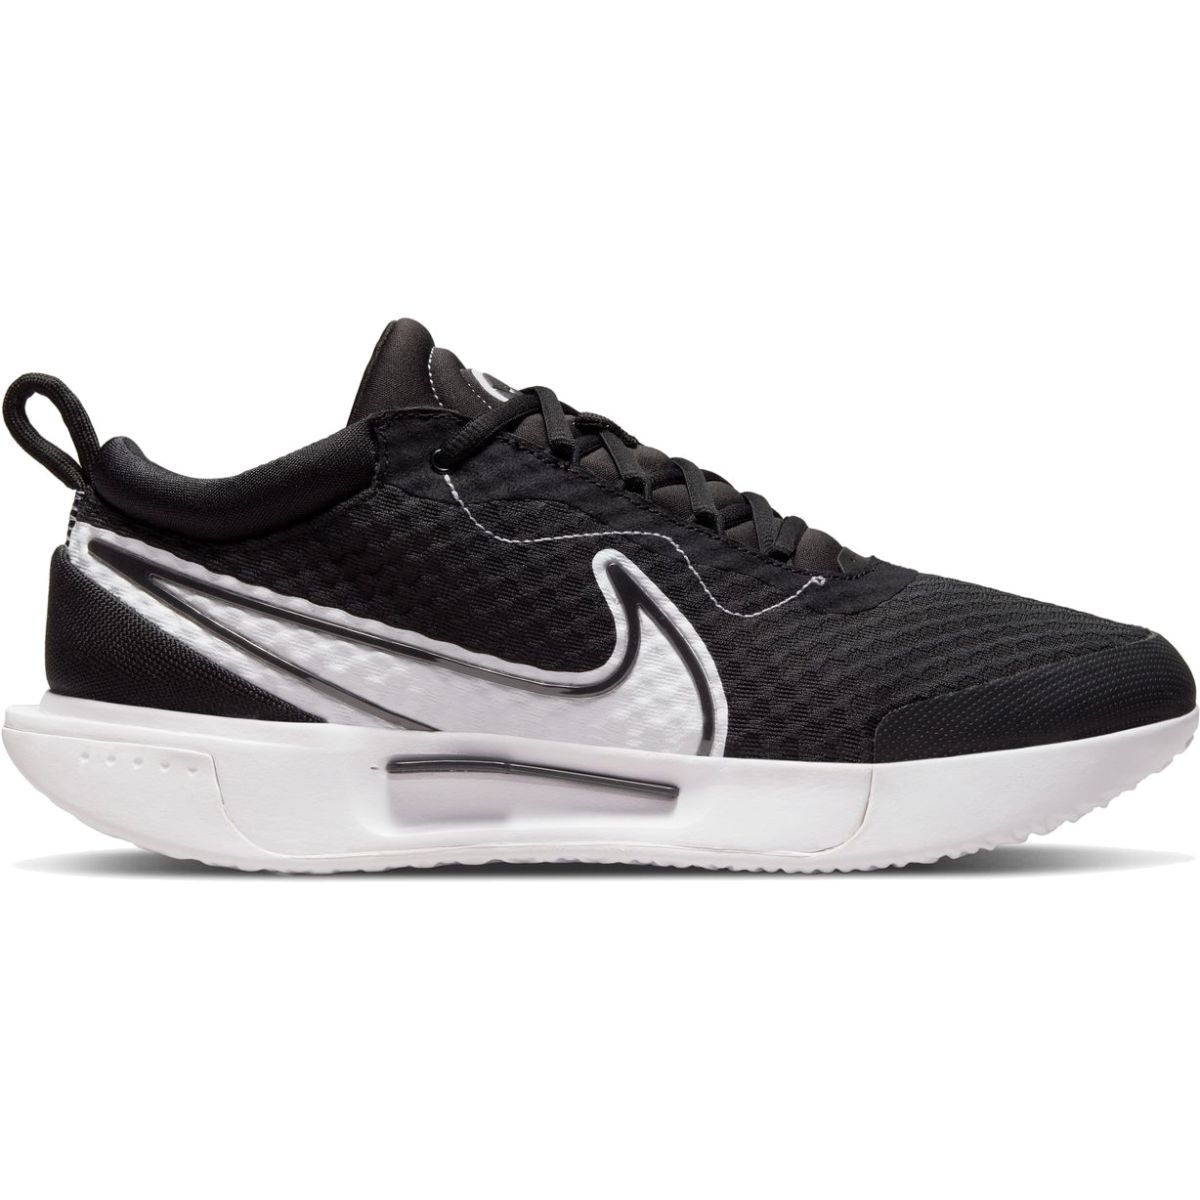 NikeCourt Zoom Pro Men's Tennis Shoes DH0618-010